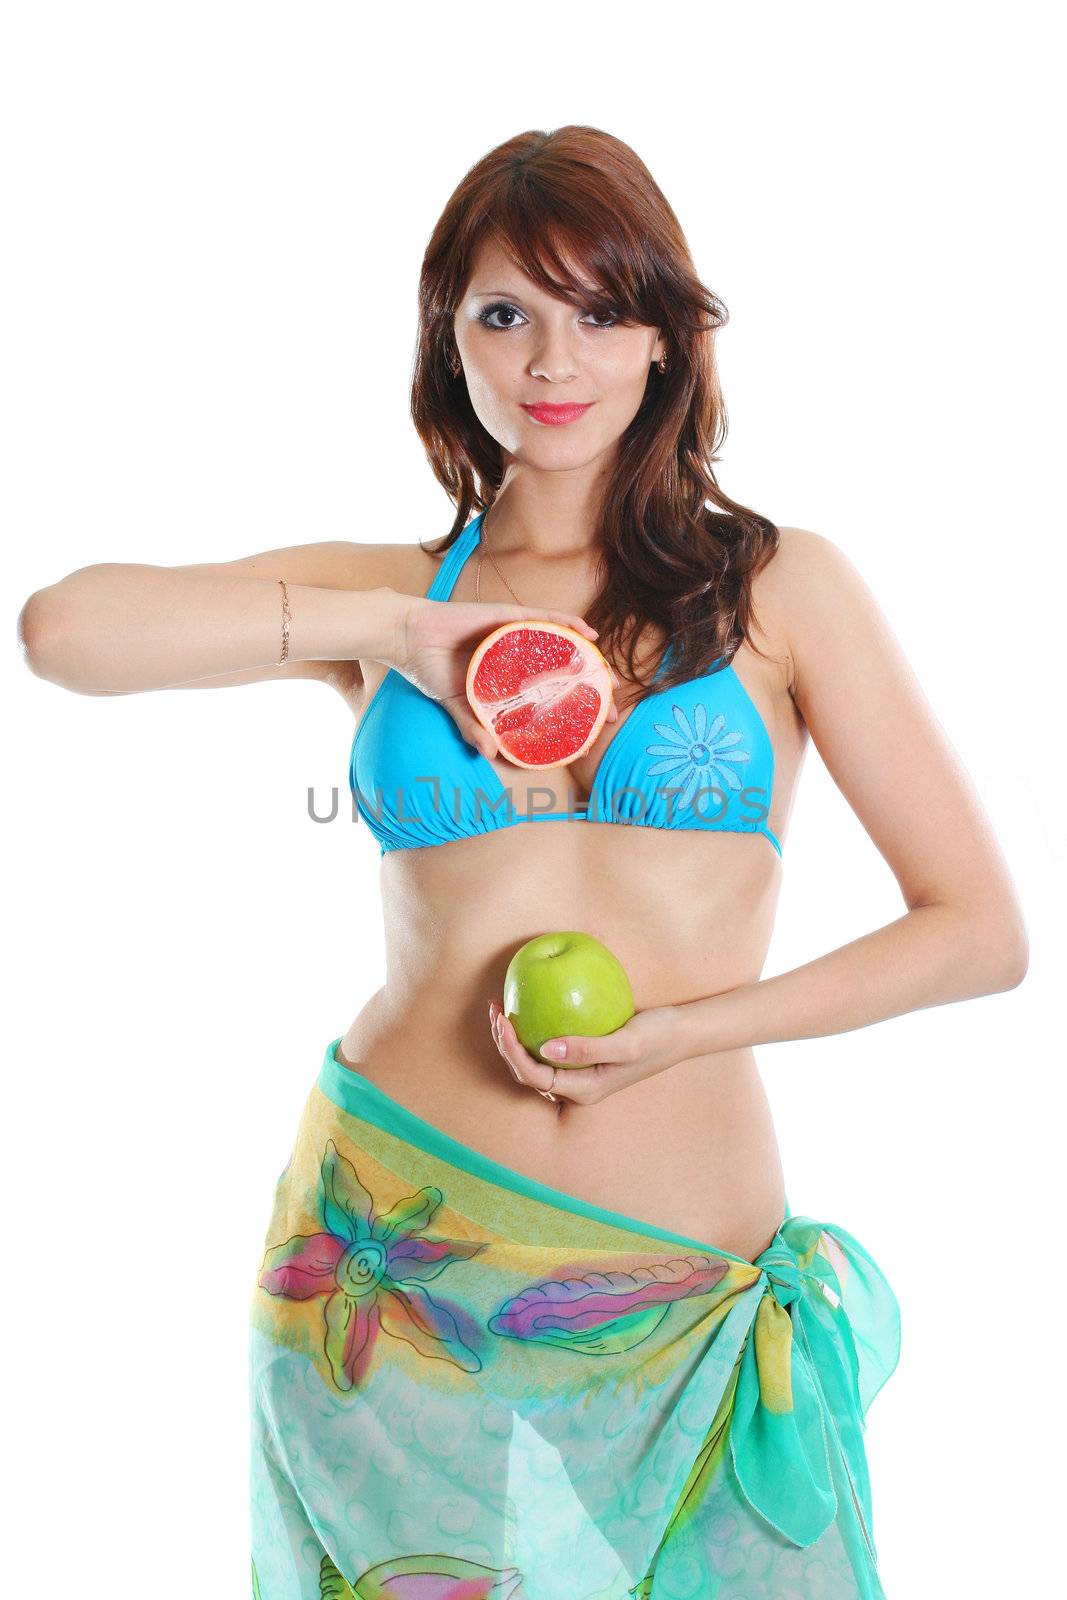 lifestyles fruits beauty bikini females young girls